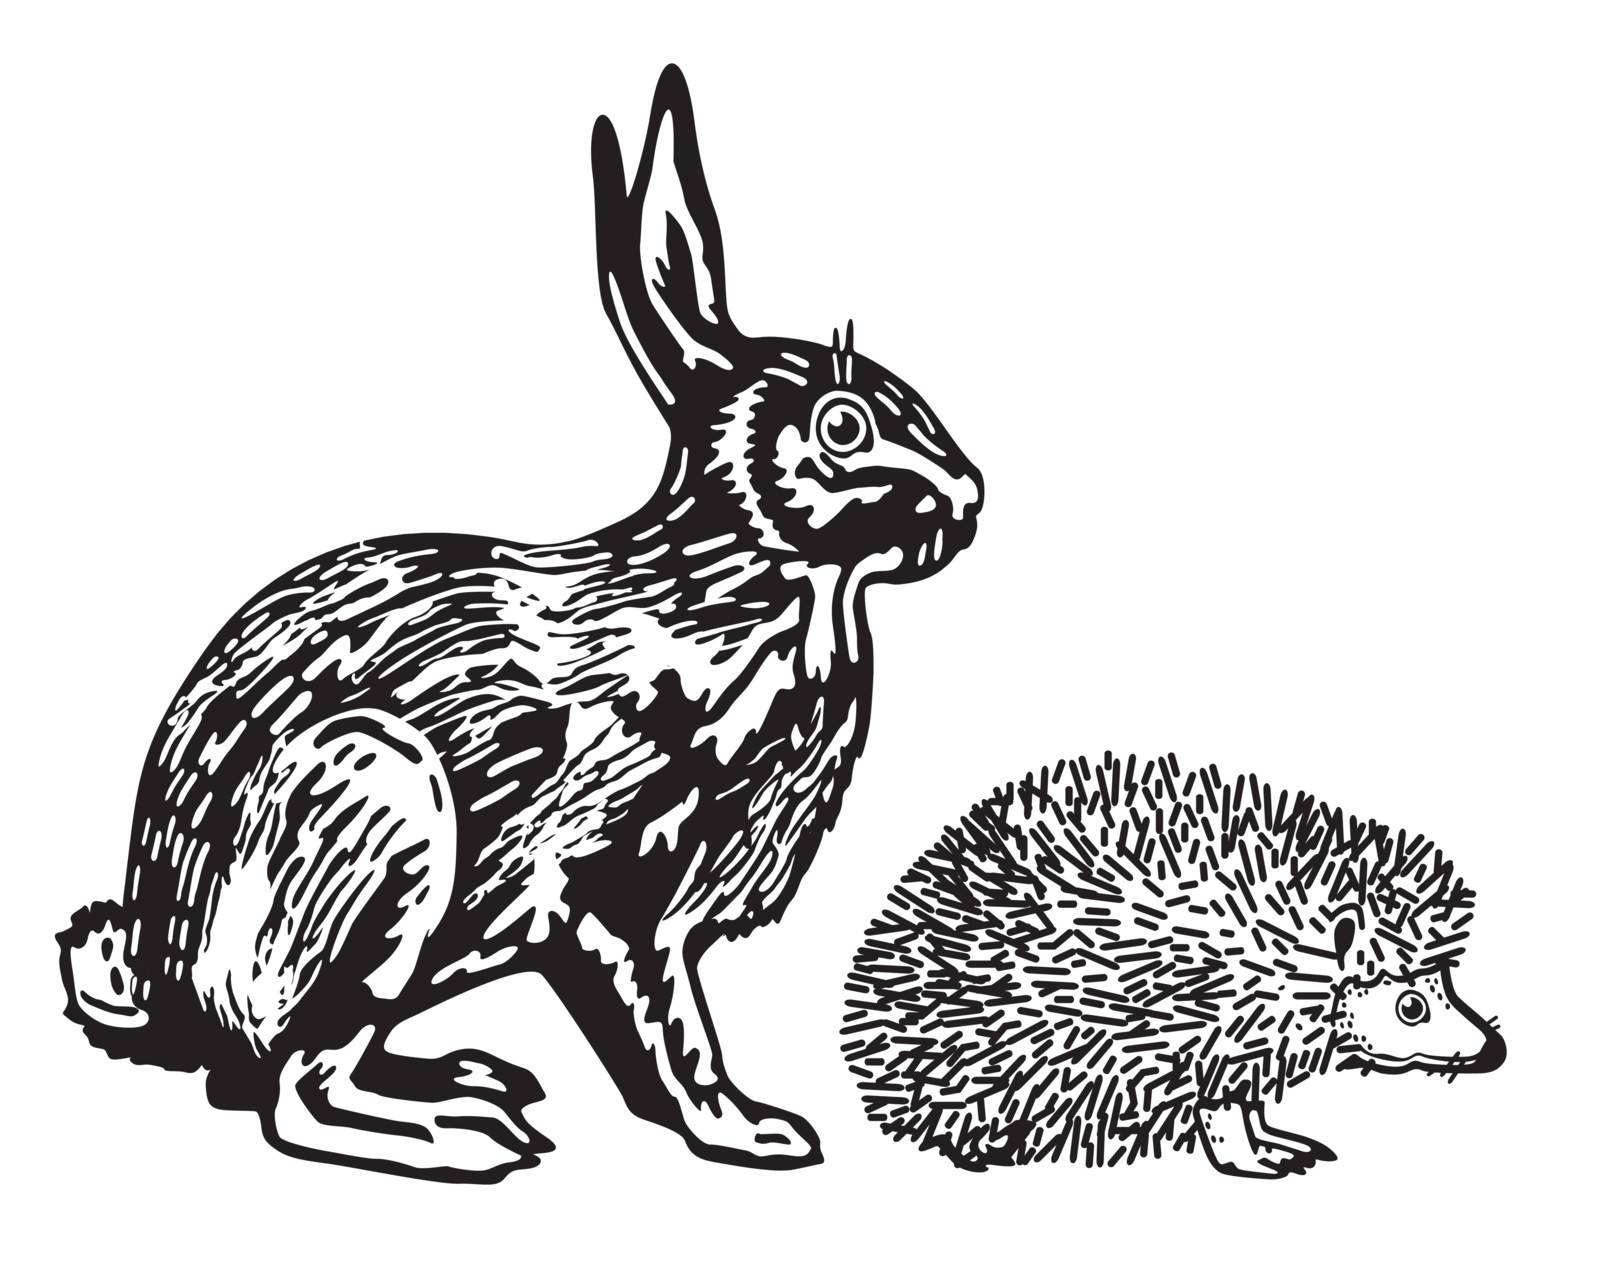 Hare and Hedgehog